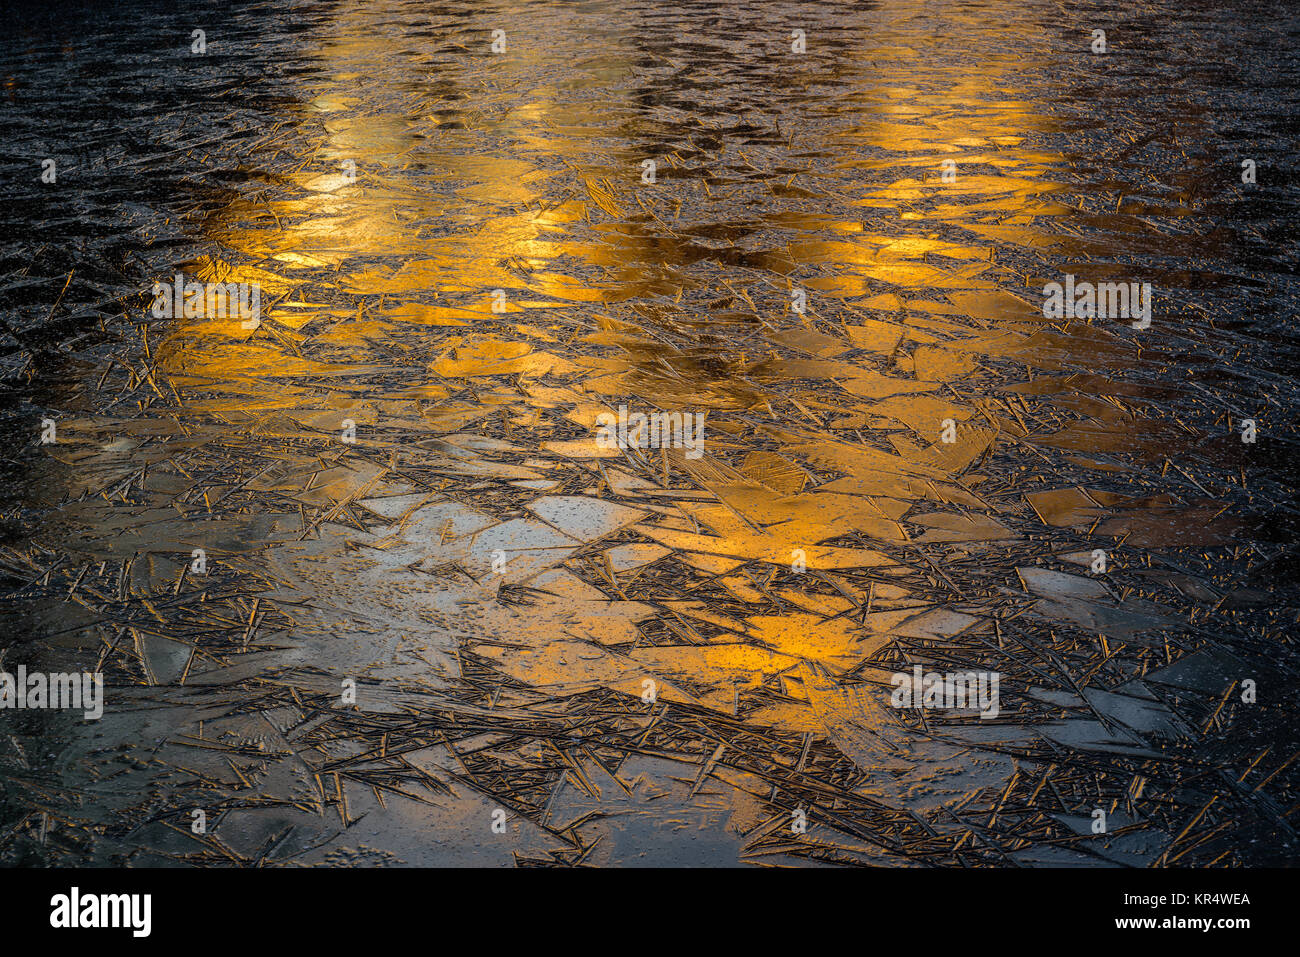 Abstract orange sunrise or sunset reflecting on lake ice. Stock Photo